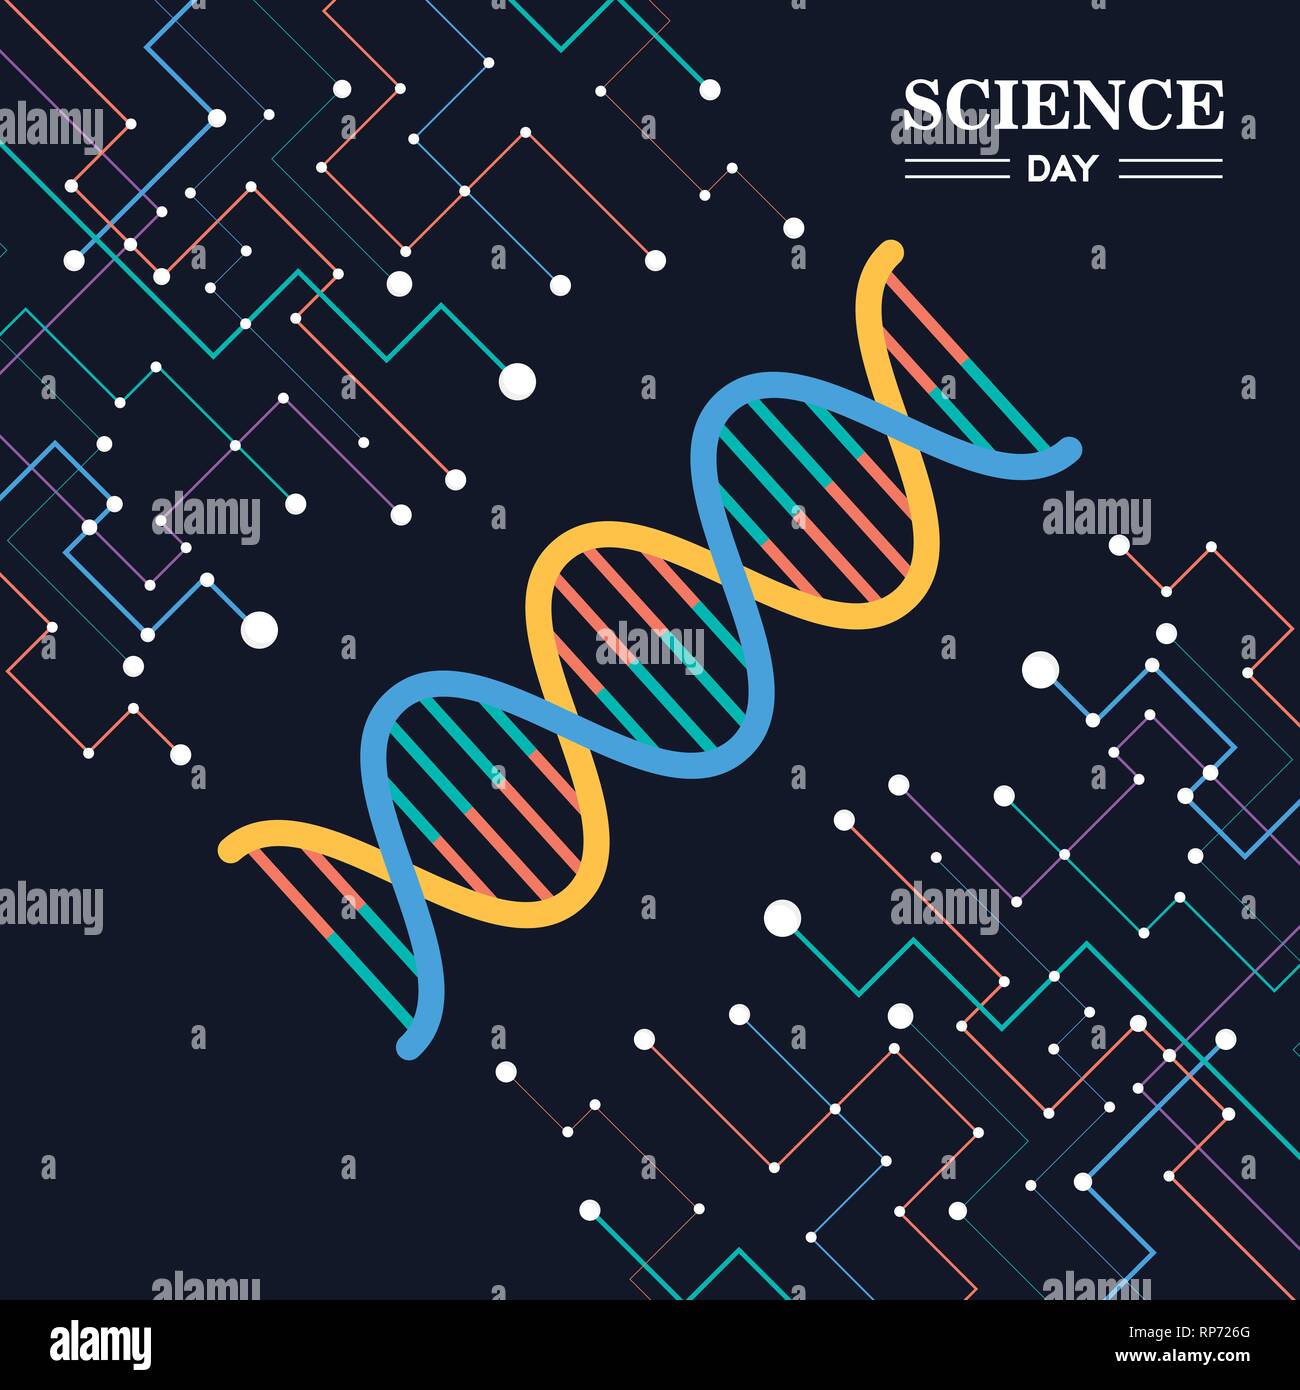 Journée scientifique de l'illustration de la carte résumé brin d'ADN pour la recherche et l'éducation. Illustration de Vecteur